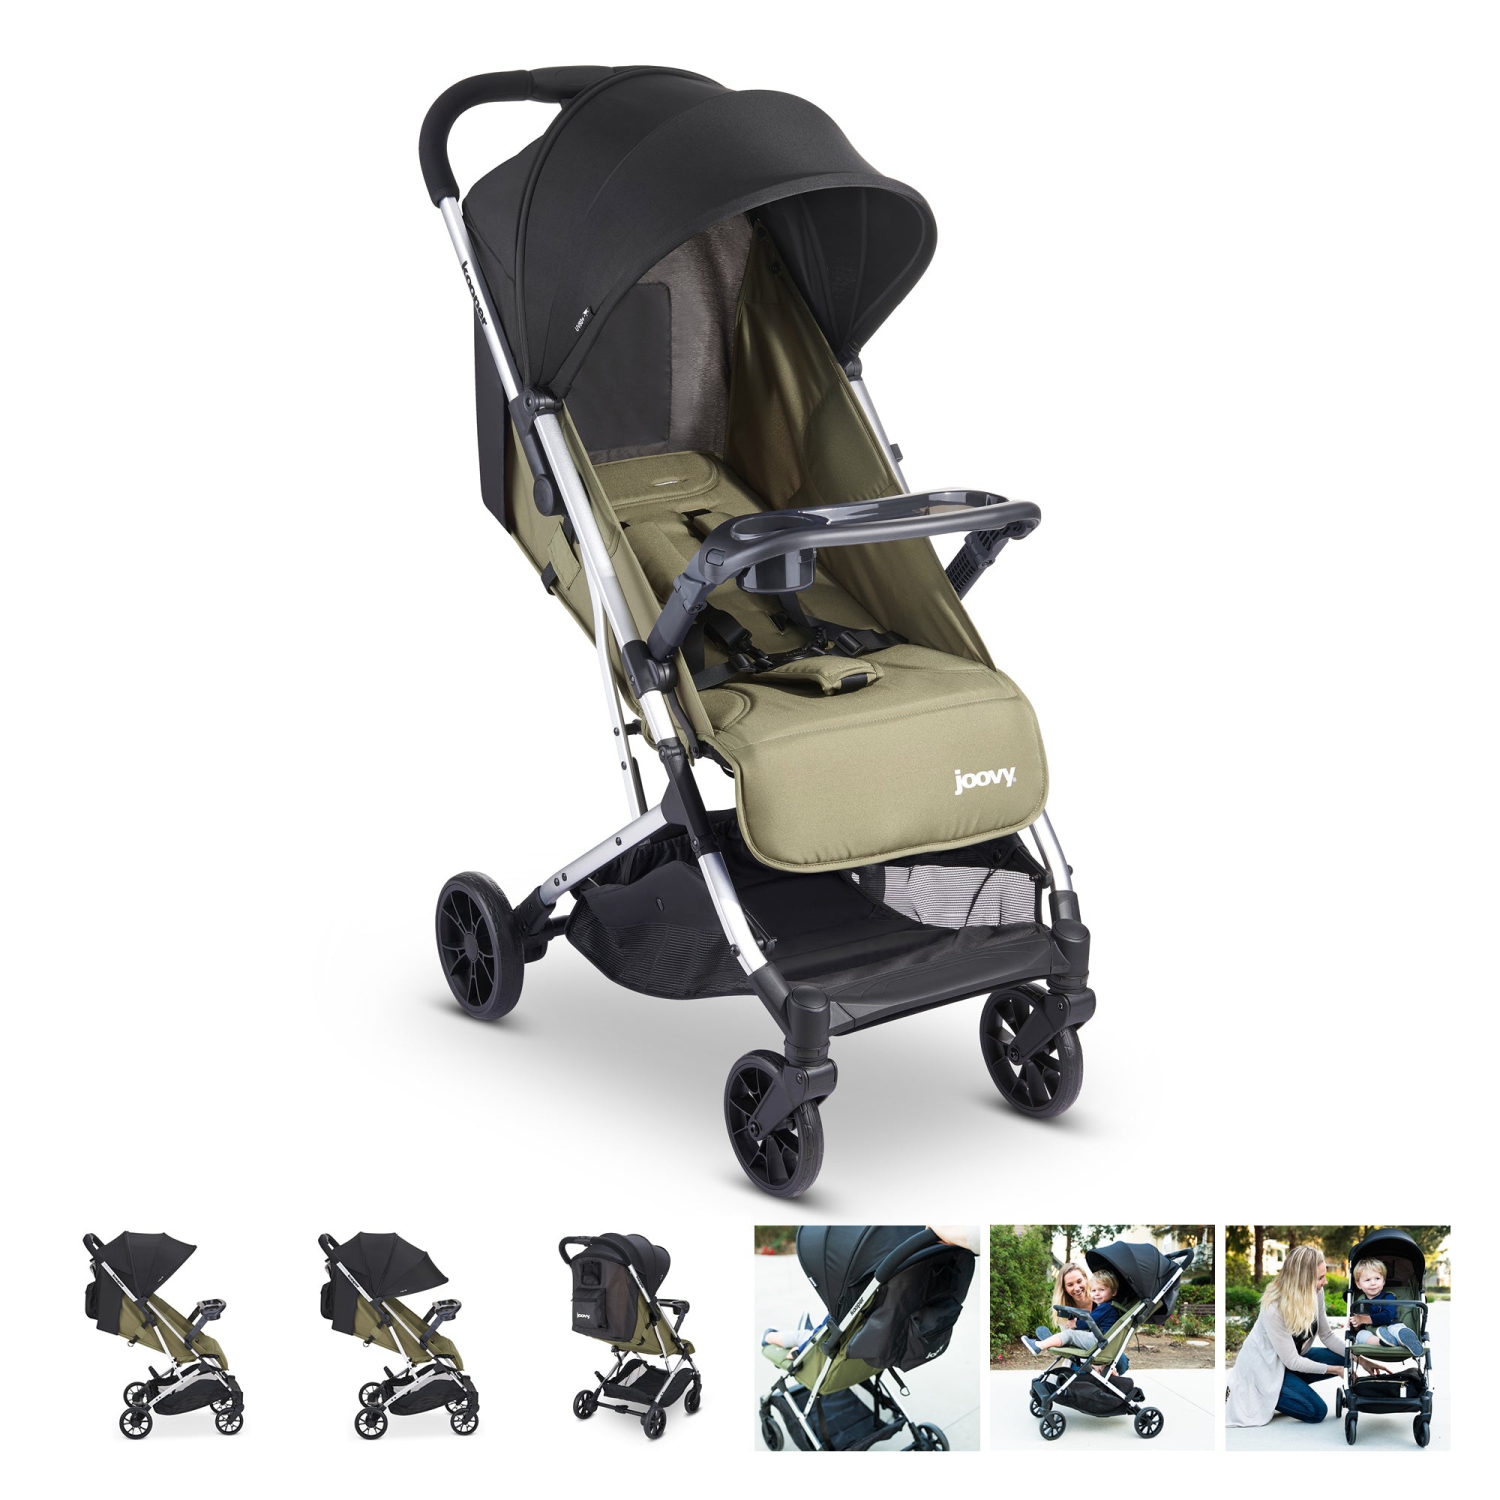 Joovy kooper stroller for infant, baby, and kids for travel, olive